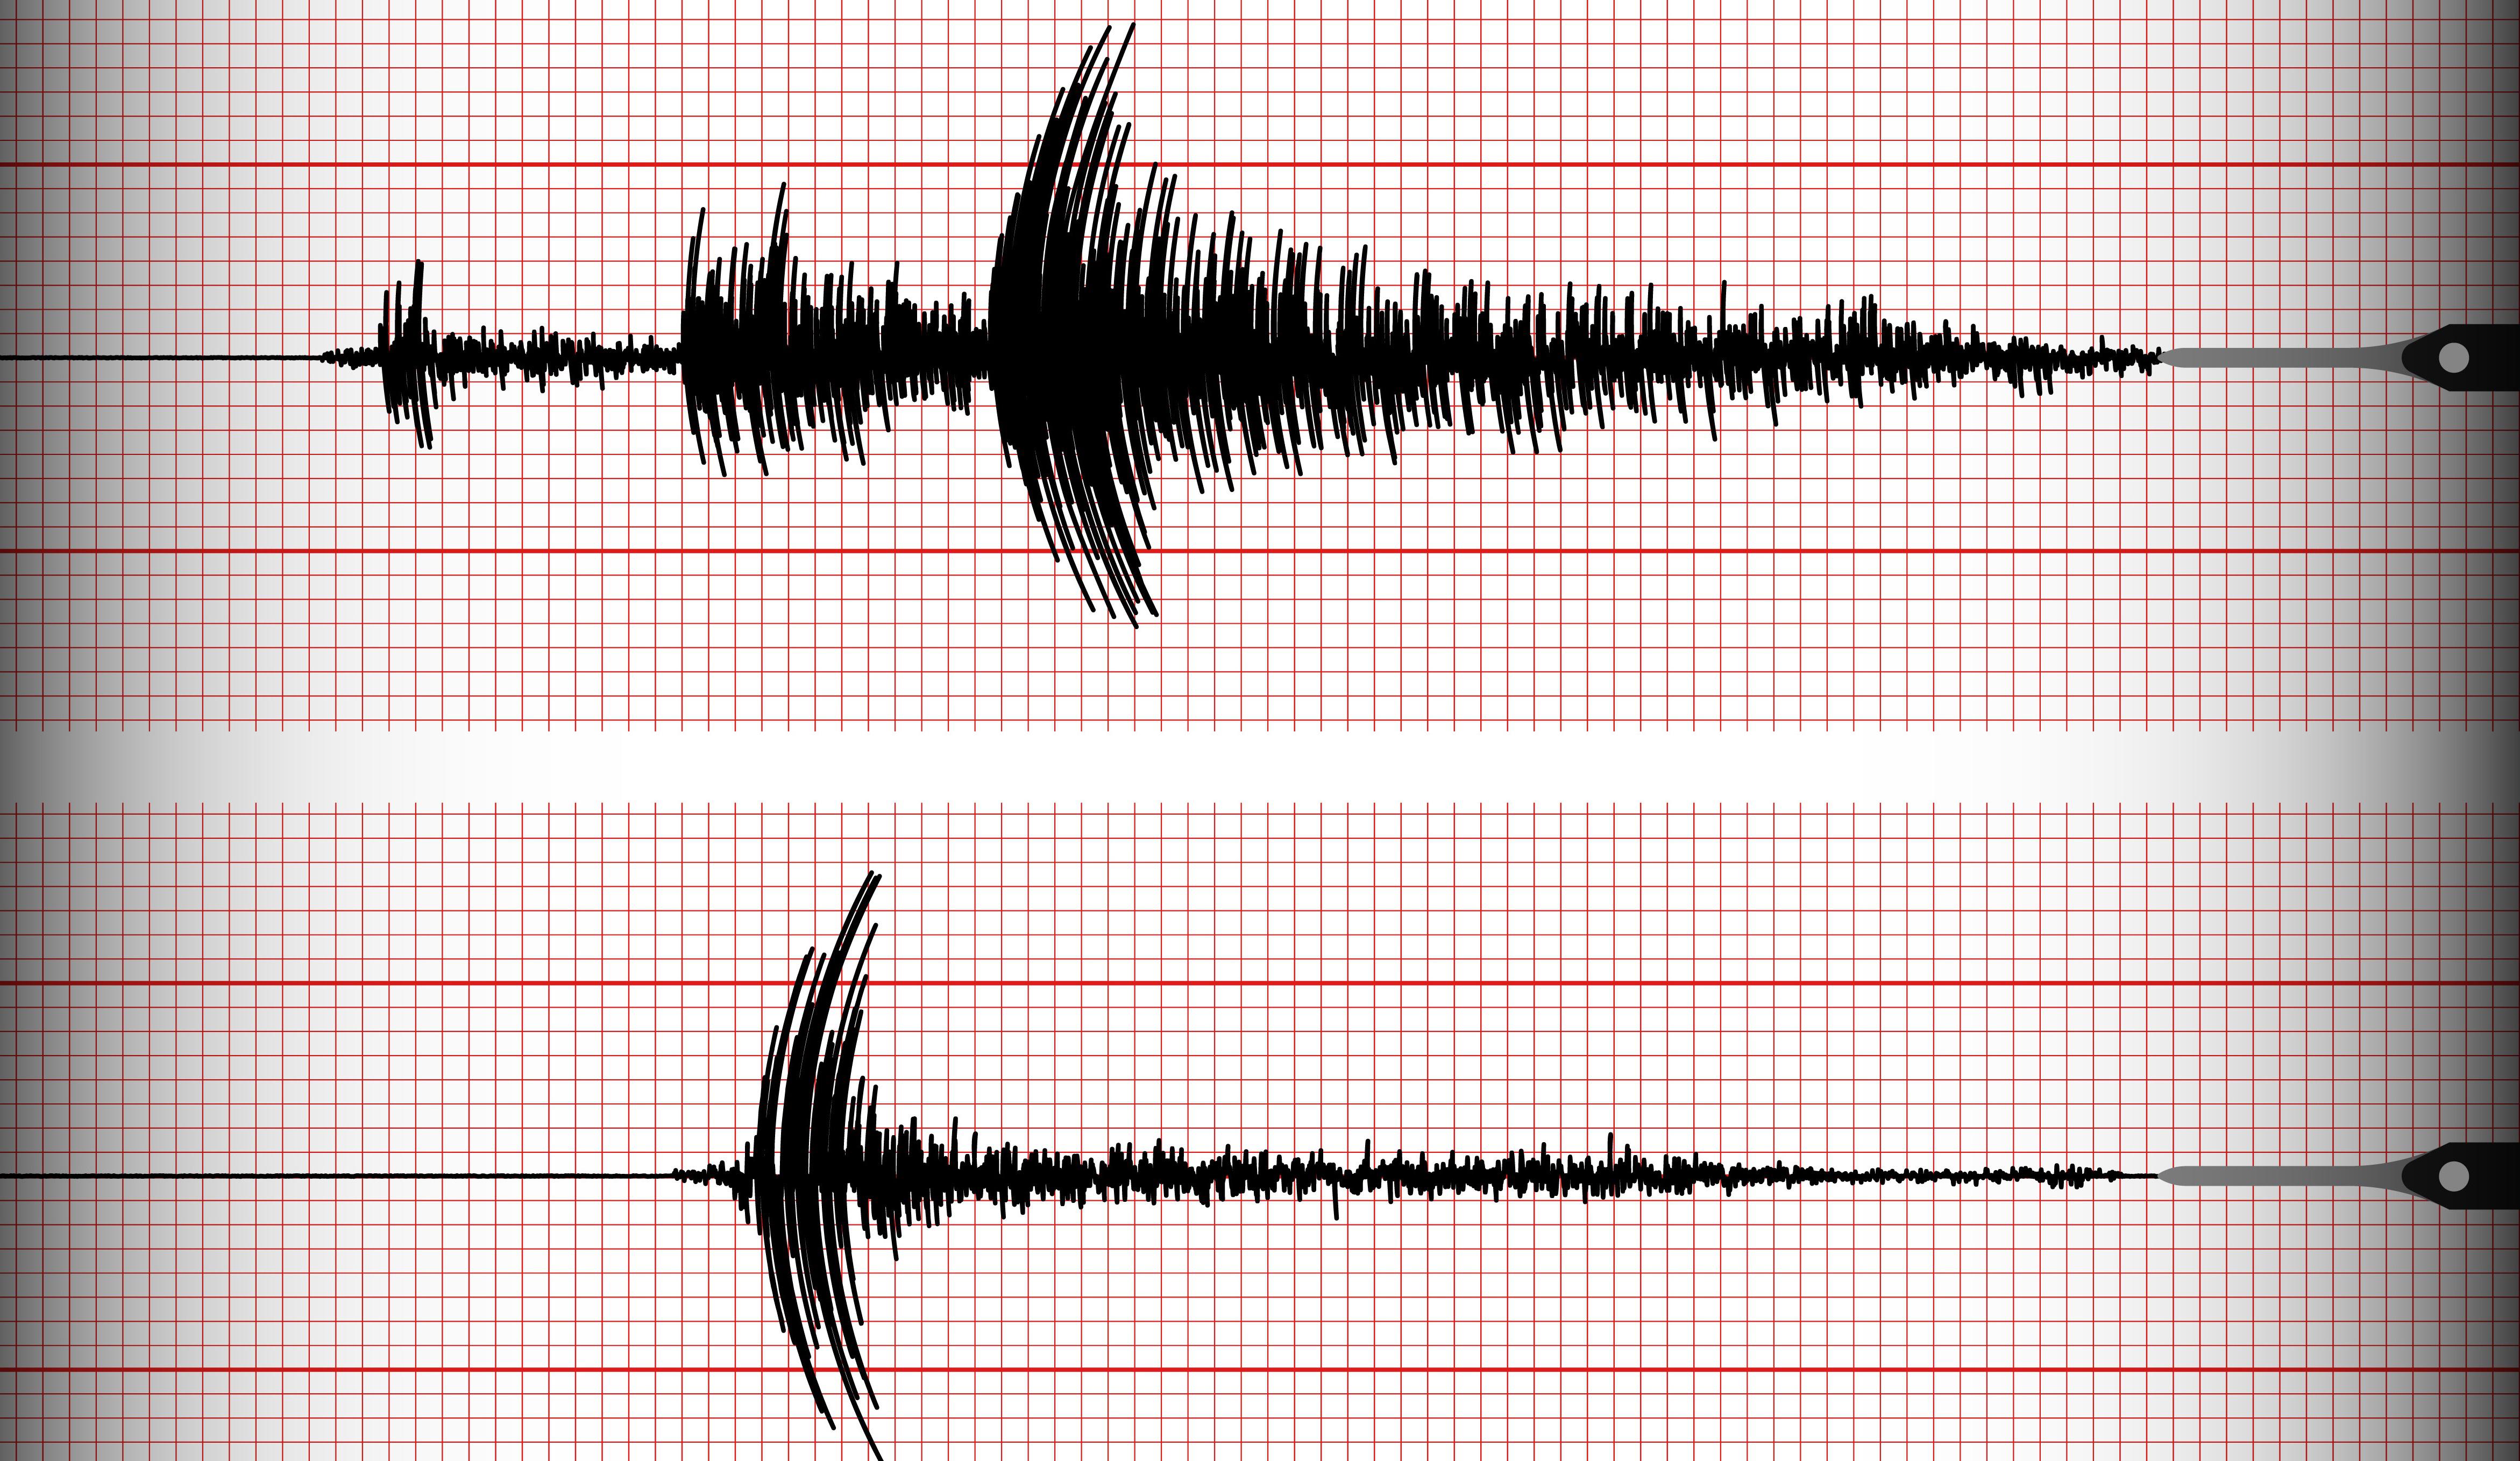 Terremoto Parma oggi, scossa di magnitudo 3.3